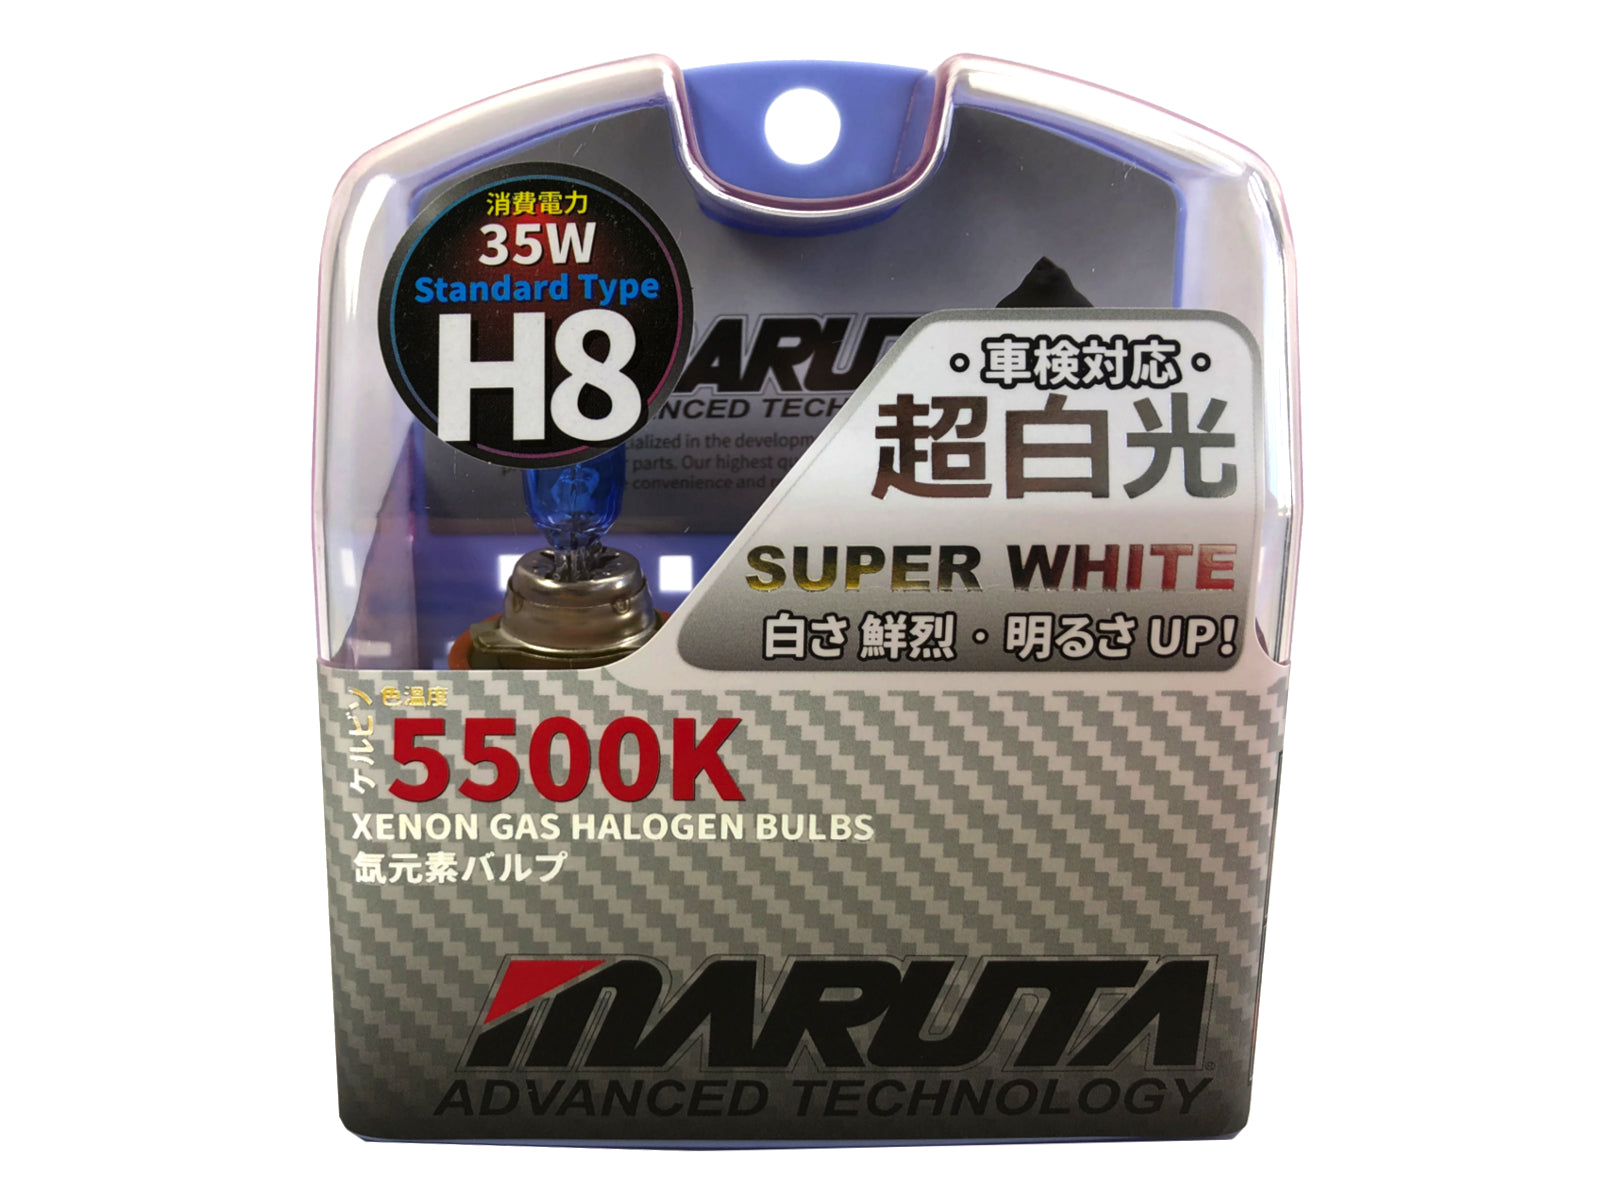 MARUTA SUPER WHITE H8 12V 35W lampe halogène pour phares, feux antibrouillard & feux diurnes, effet xénon 5500K, ampoule xénon-gaz longue durée avec verre quartz de haute qualité & homologation routière (marque ECE) - Bild 1